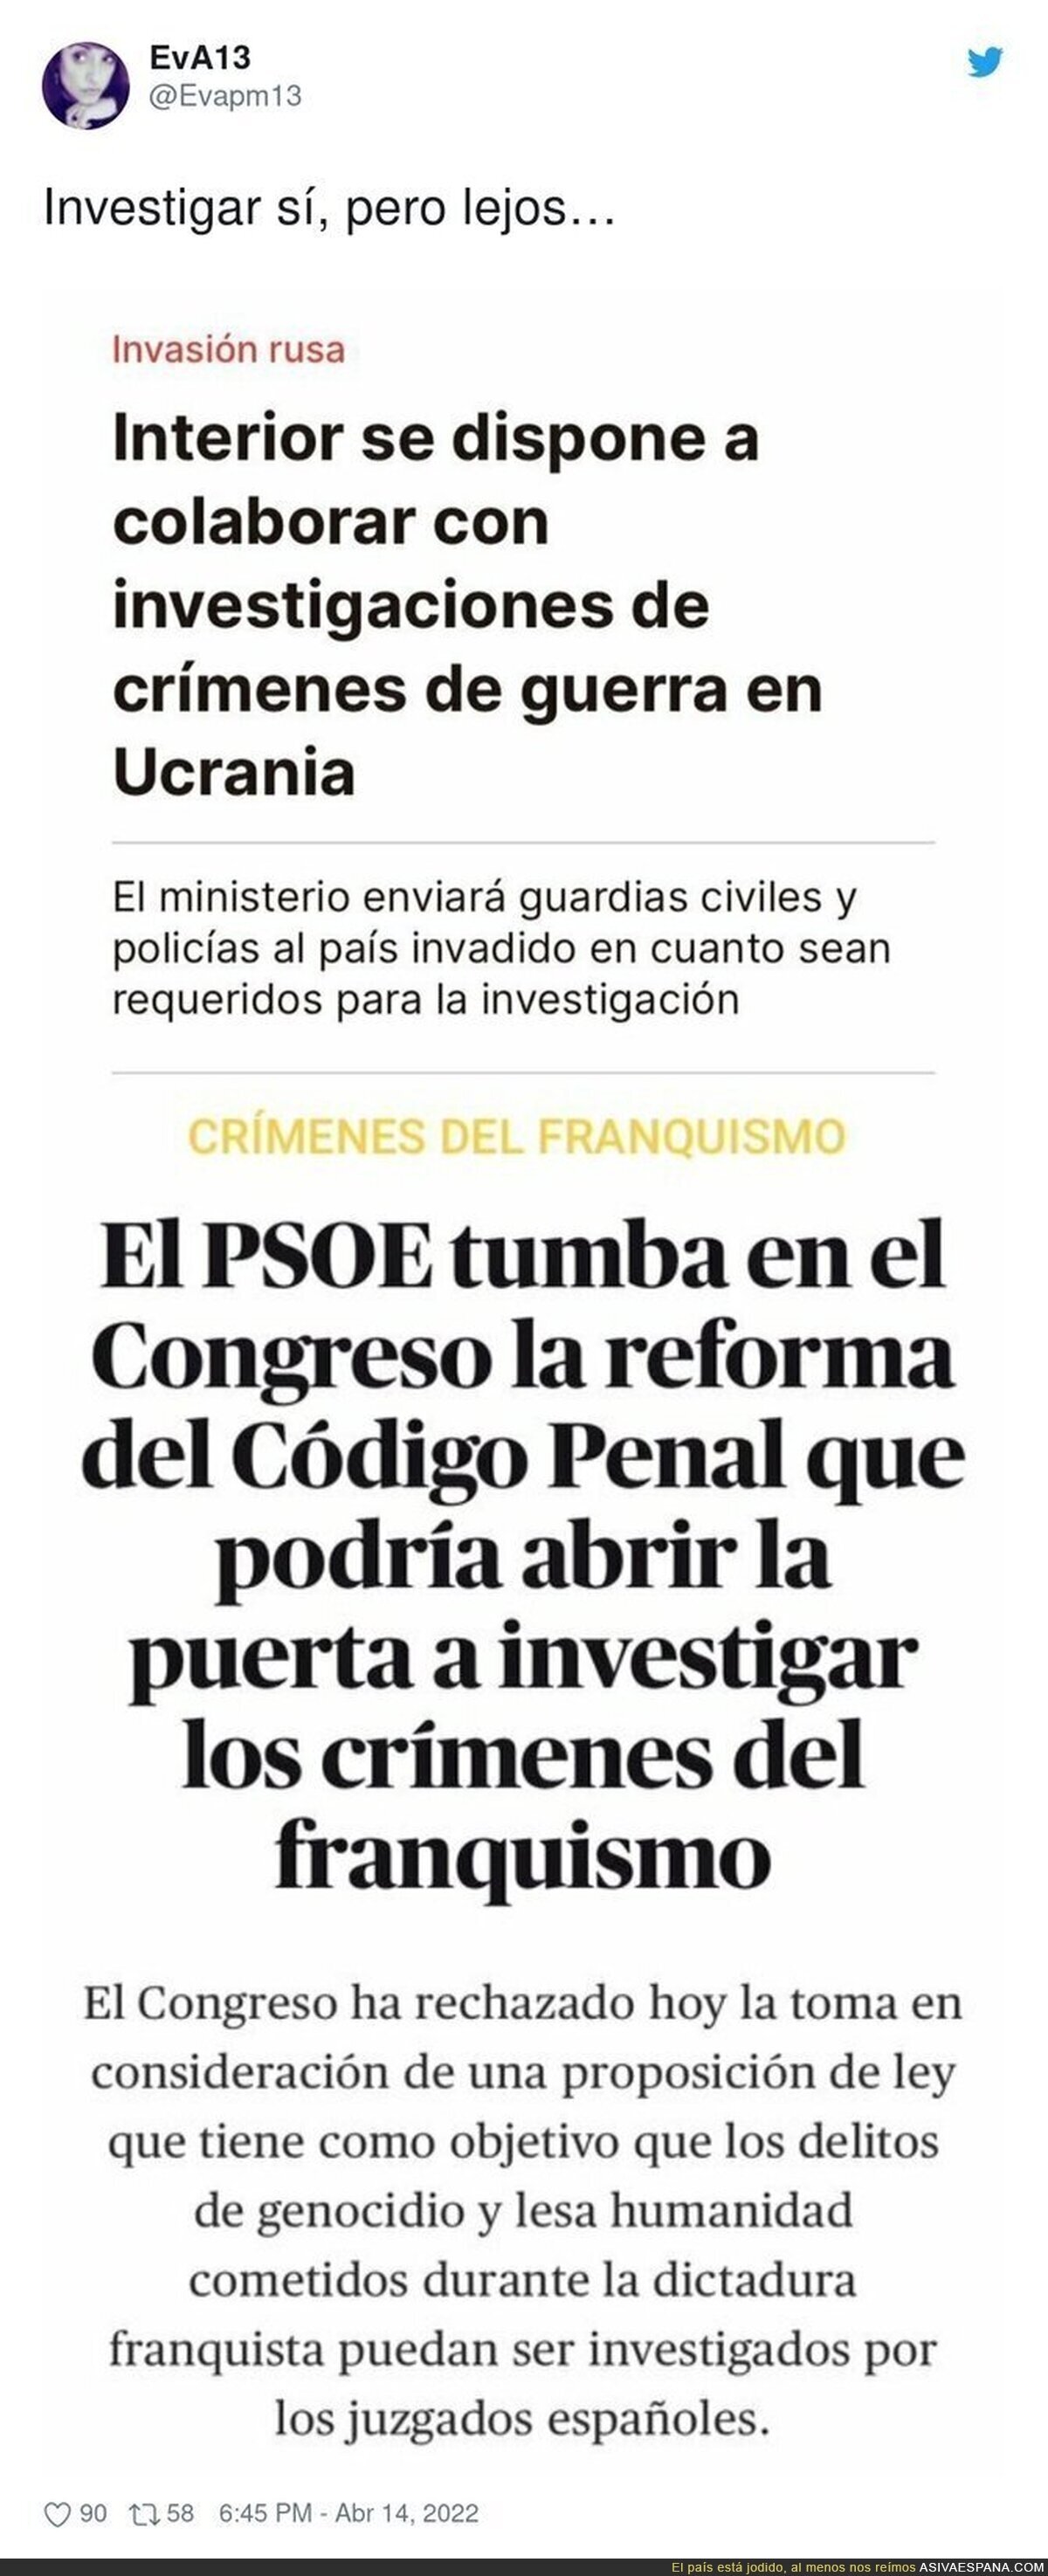 El PSOE debe investigar TODO